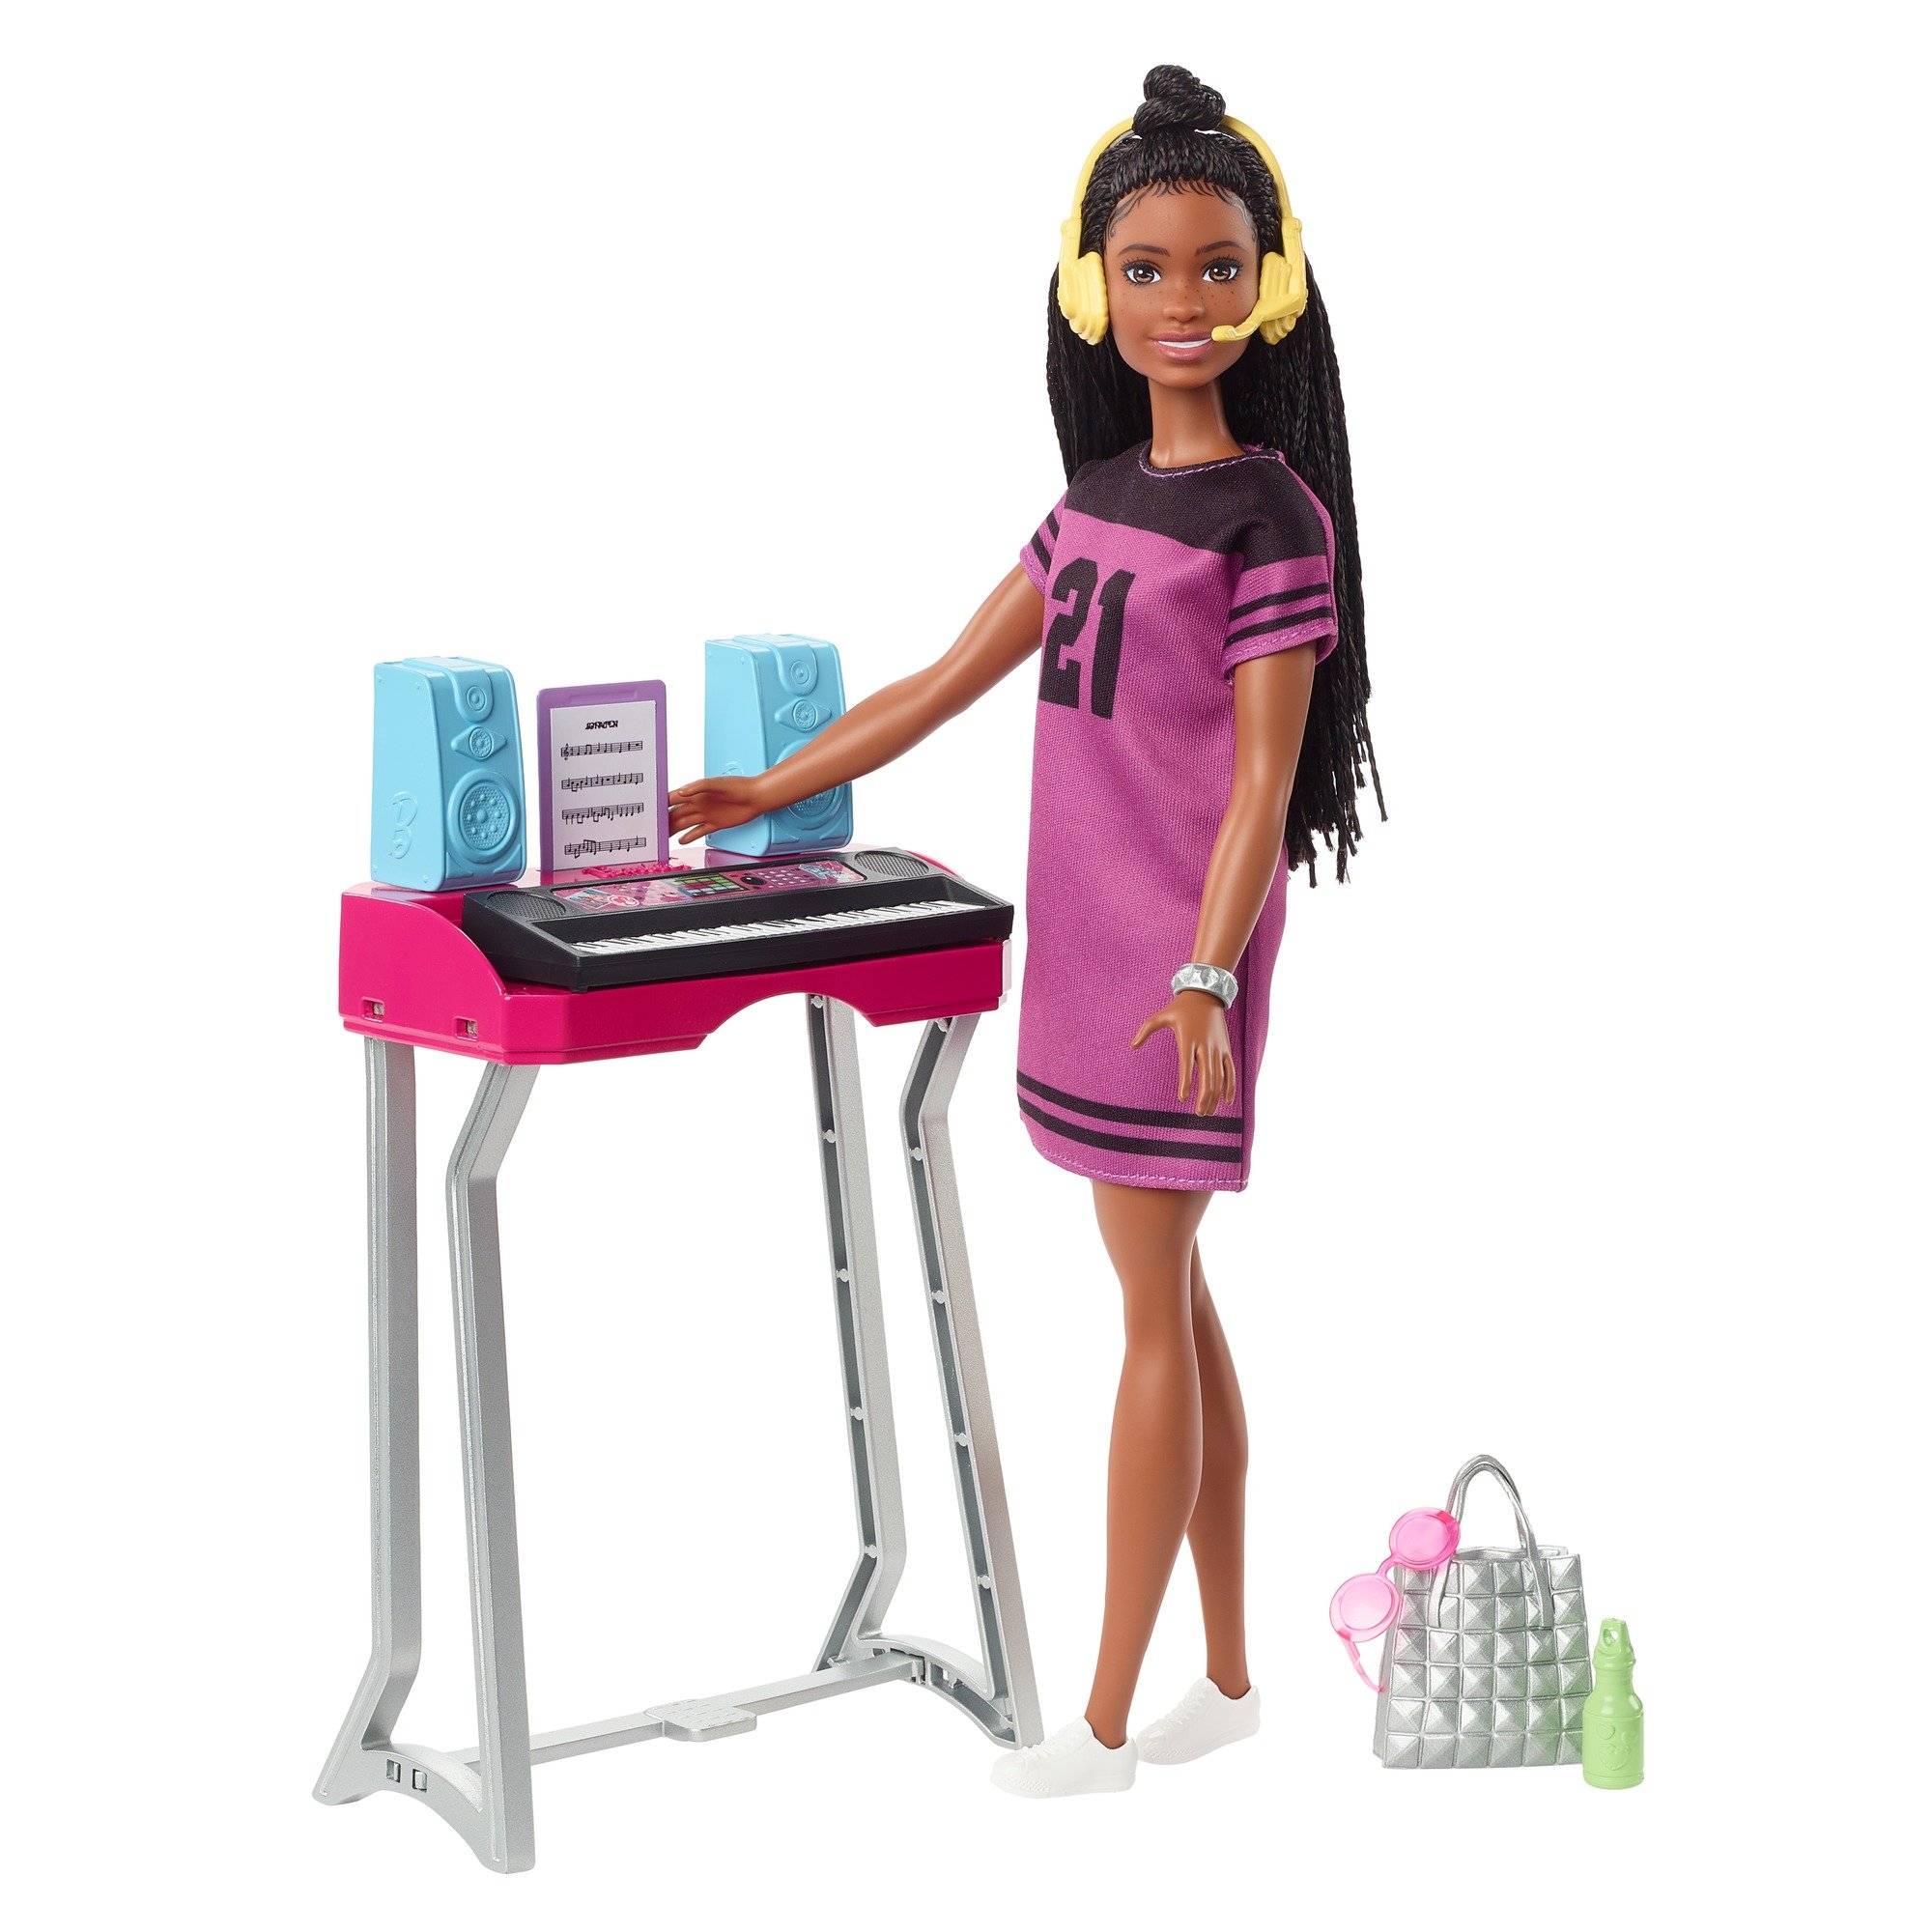 Barbie Игровой набор Бруклин с аксессуарами GYG40